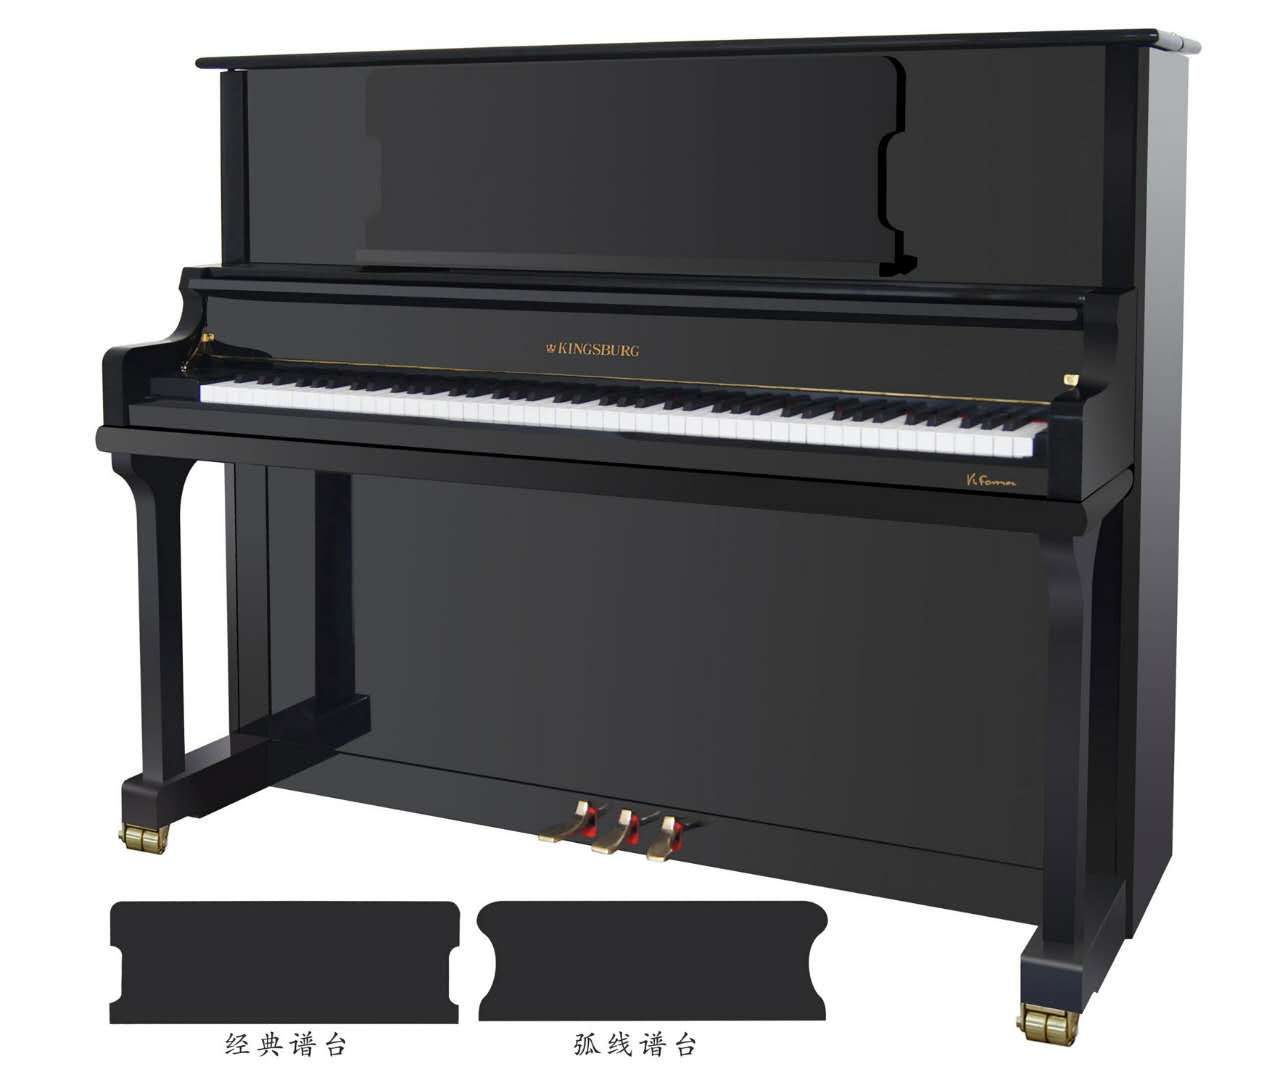 Kingsburg KF126 Siyah Konsol Piyano